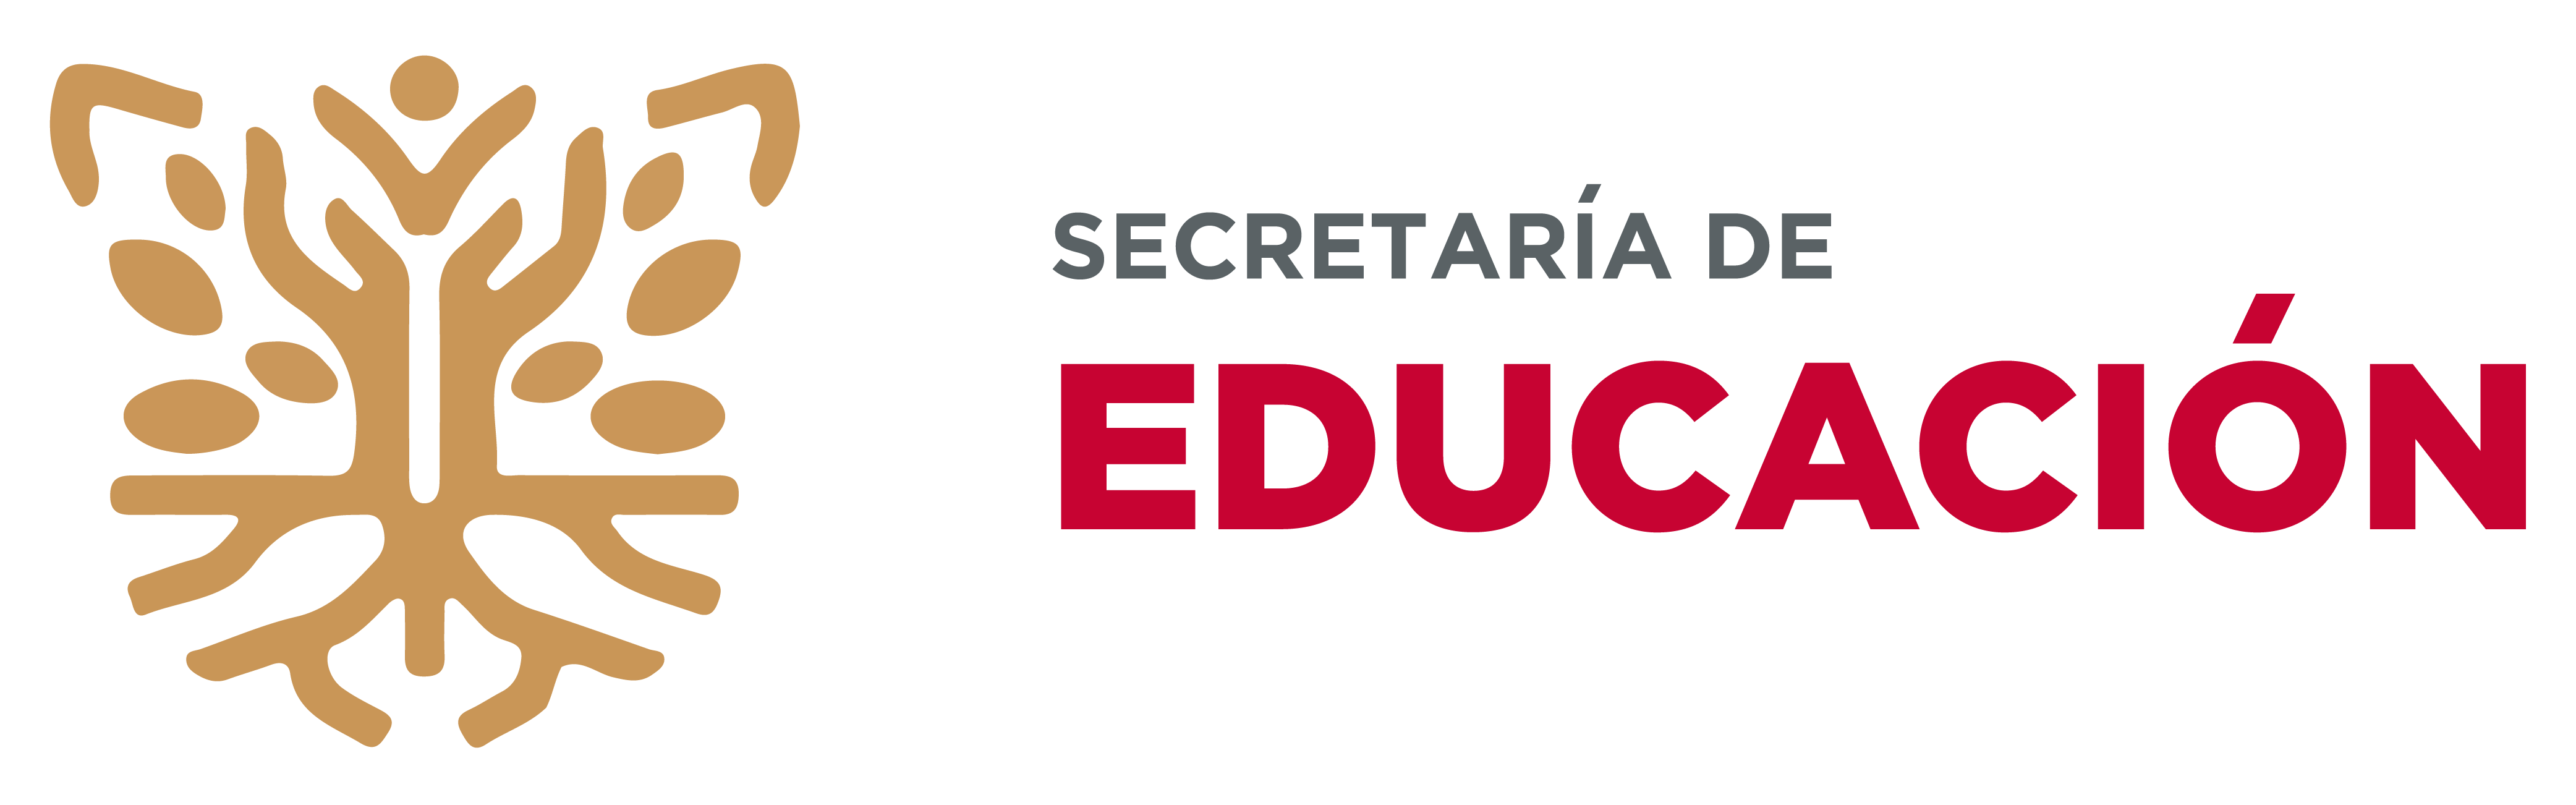 Secretría de Educación Guerrero